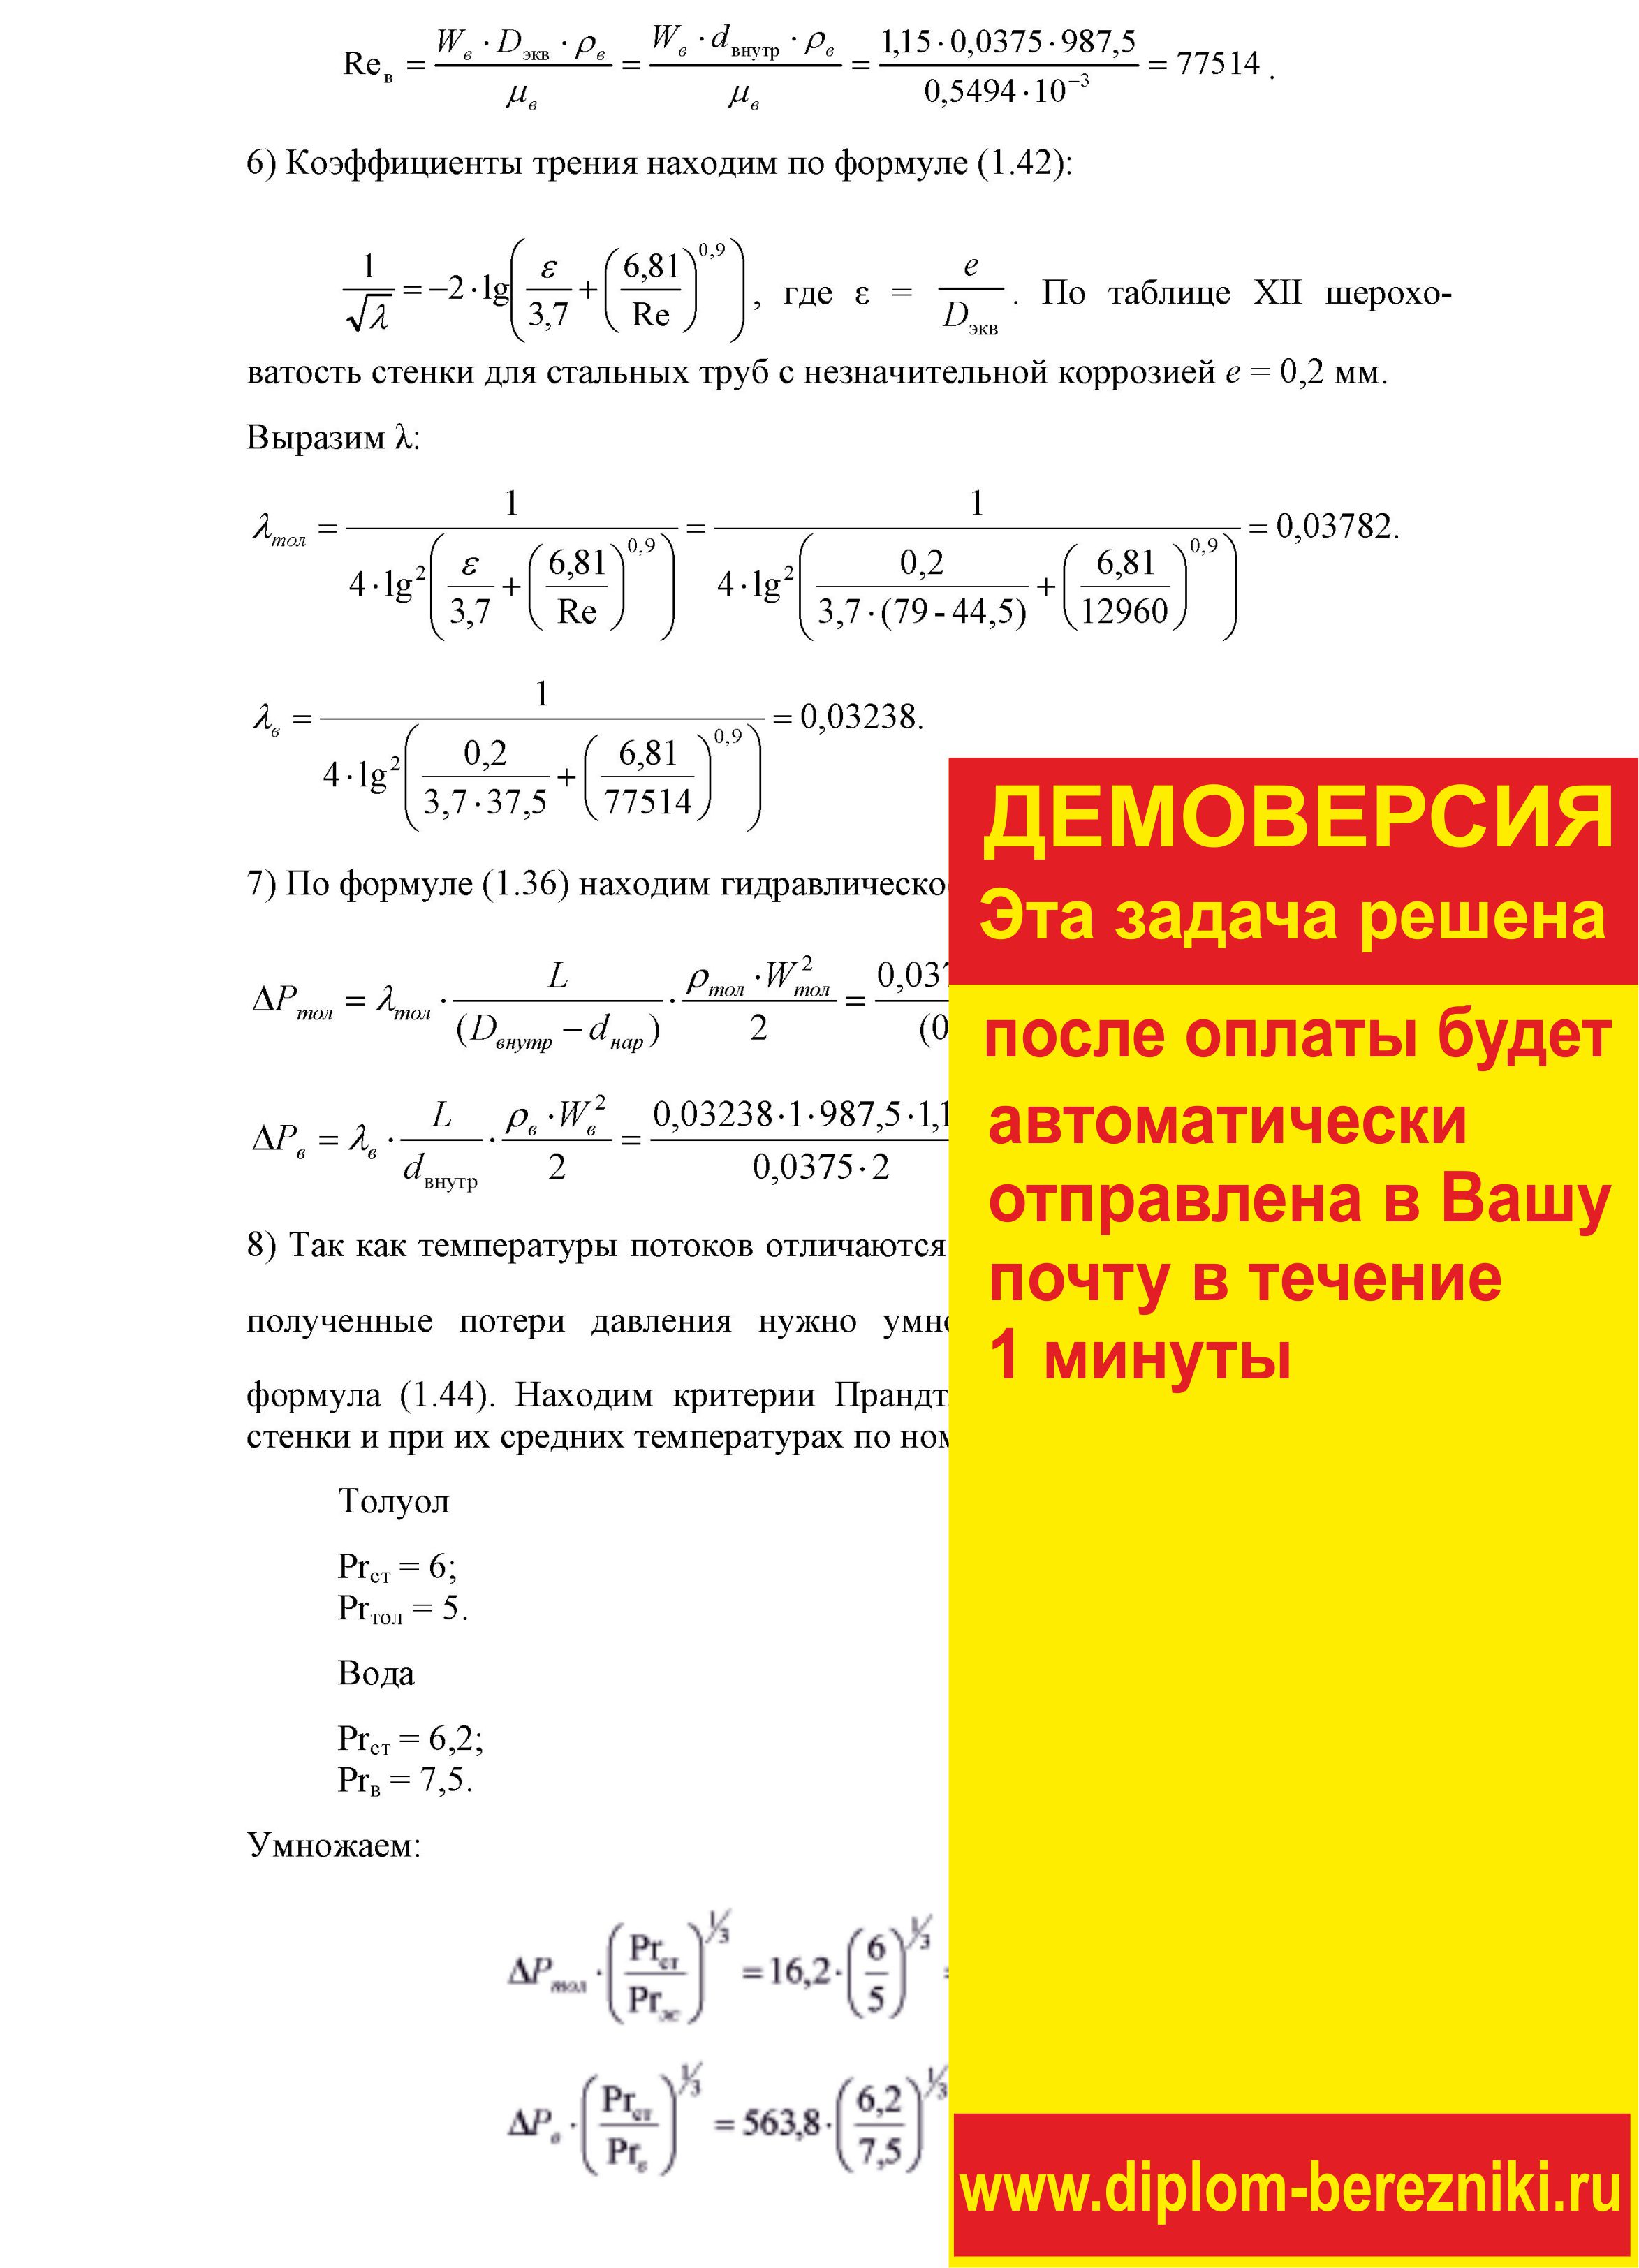 Решение задачи 1.37 по ПАХТ из задачника Павлова Романкова Носкова